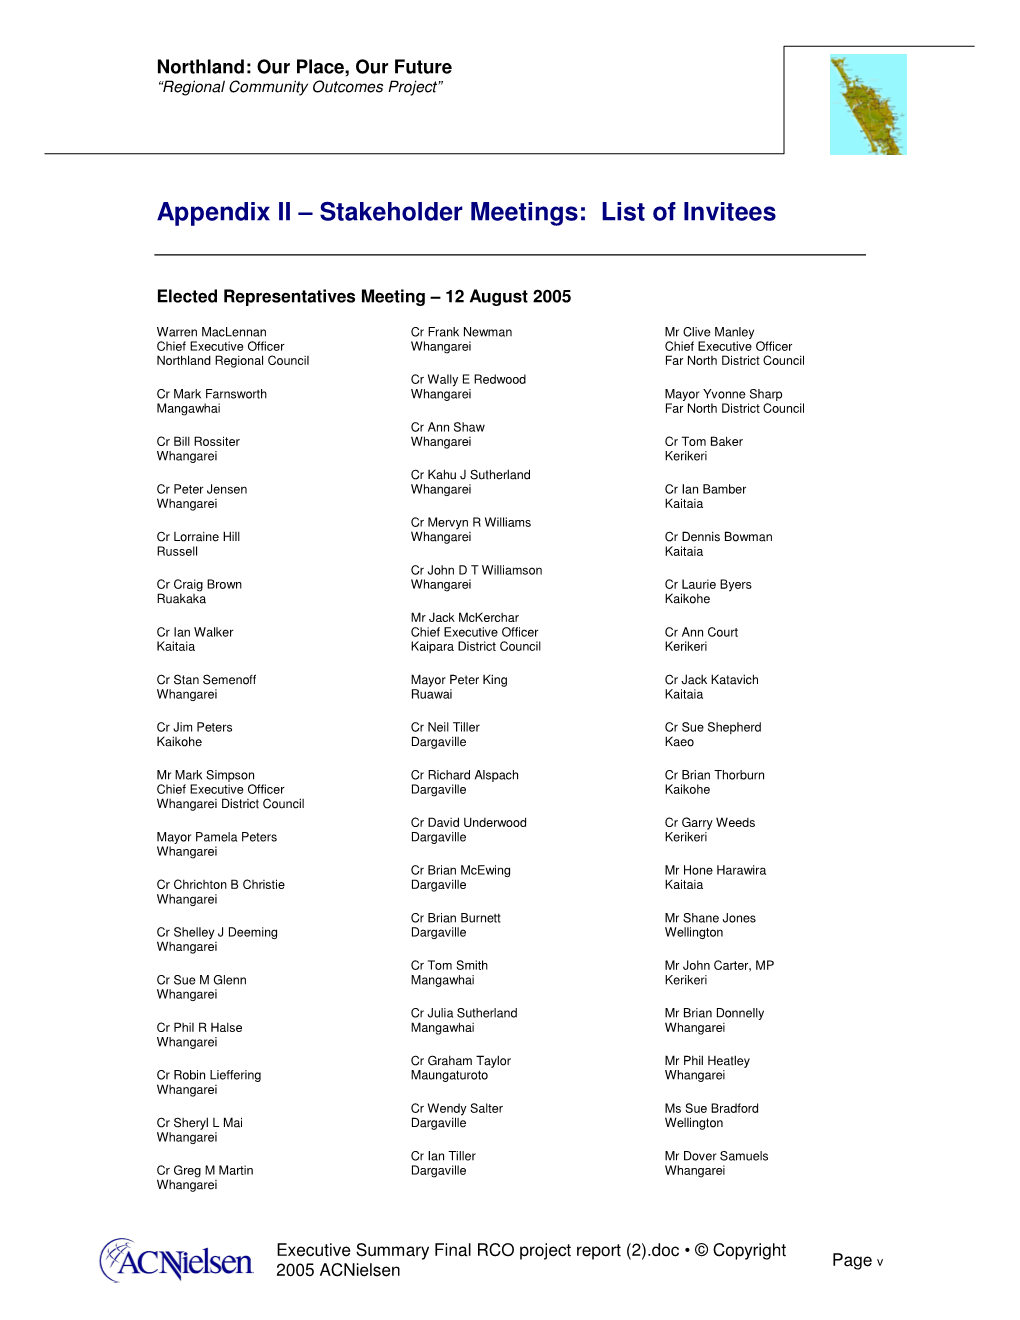 Appendix II – Stakeholder Meetings: List of Invitees